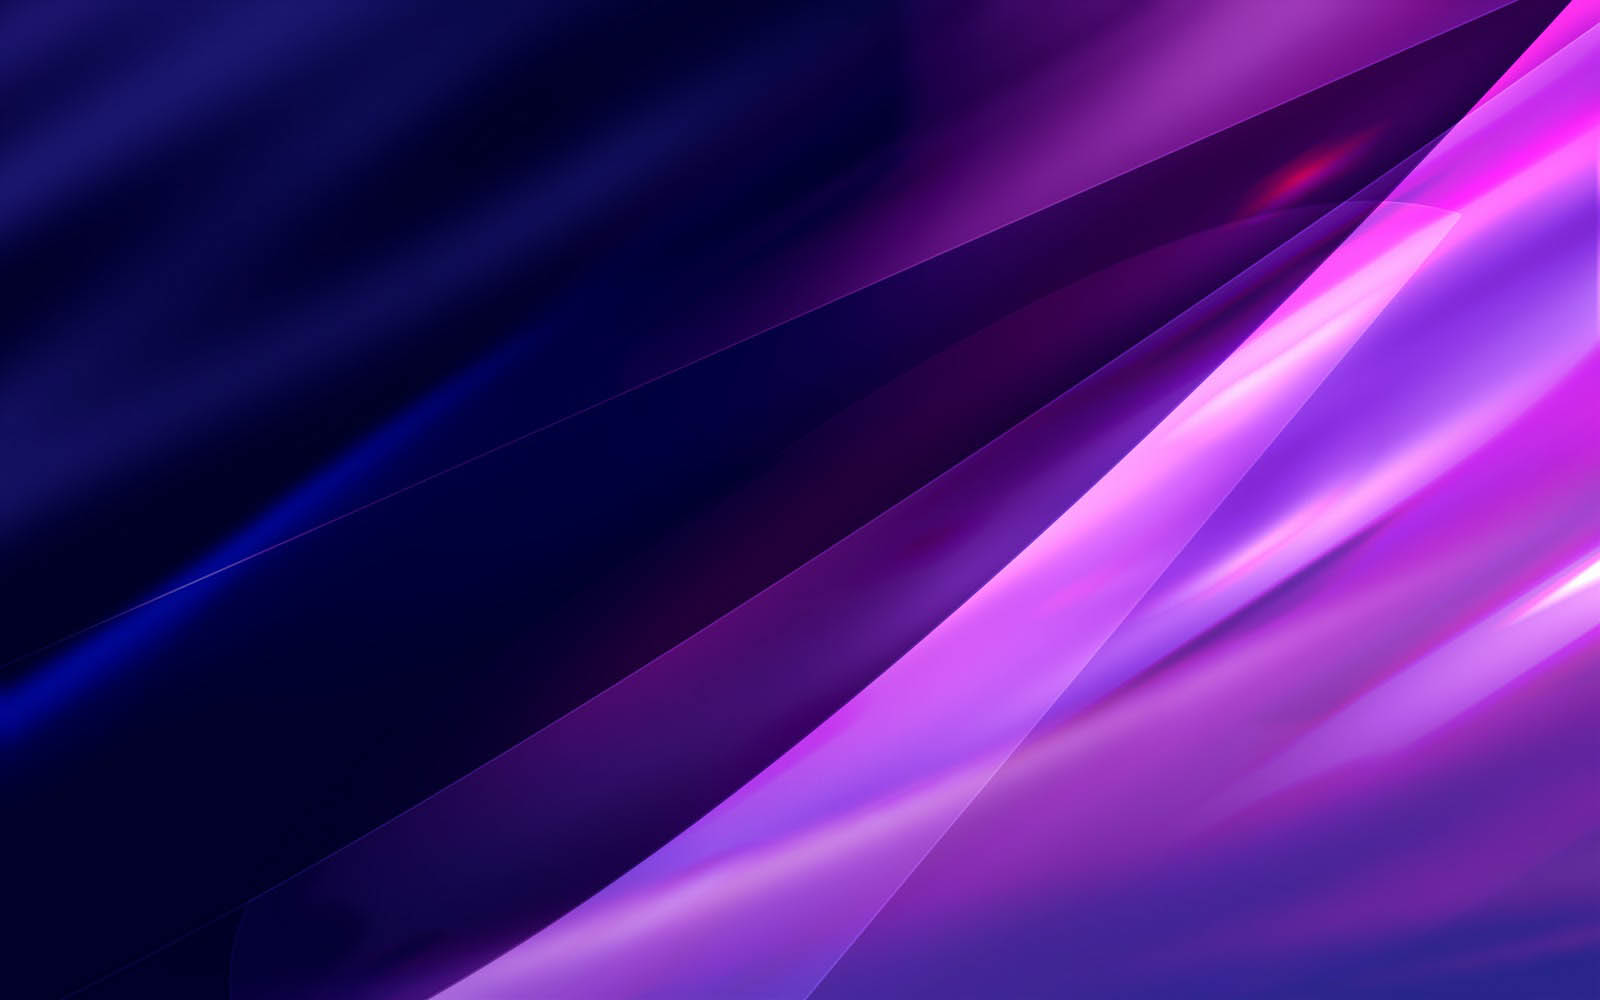 75+] Cool Purple Wallpapers - WallpaperSafari